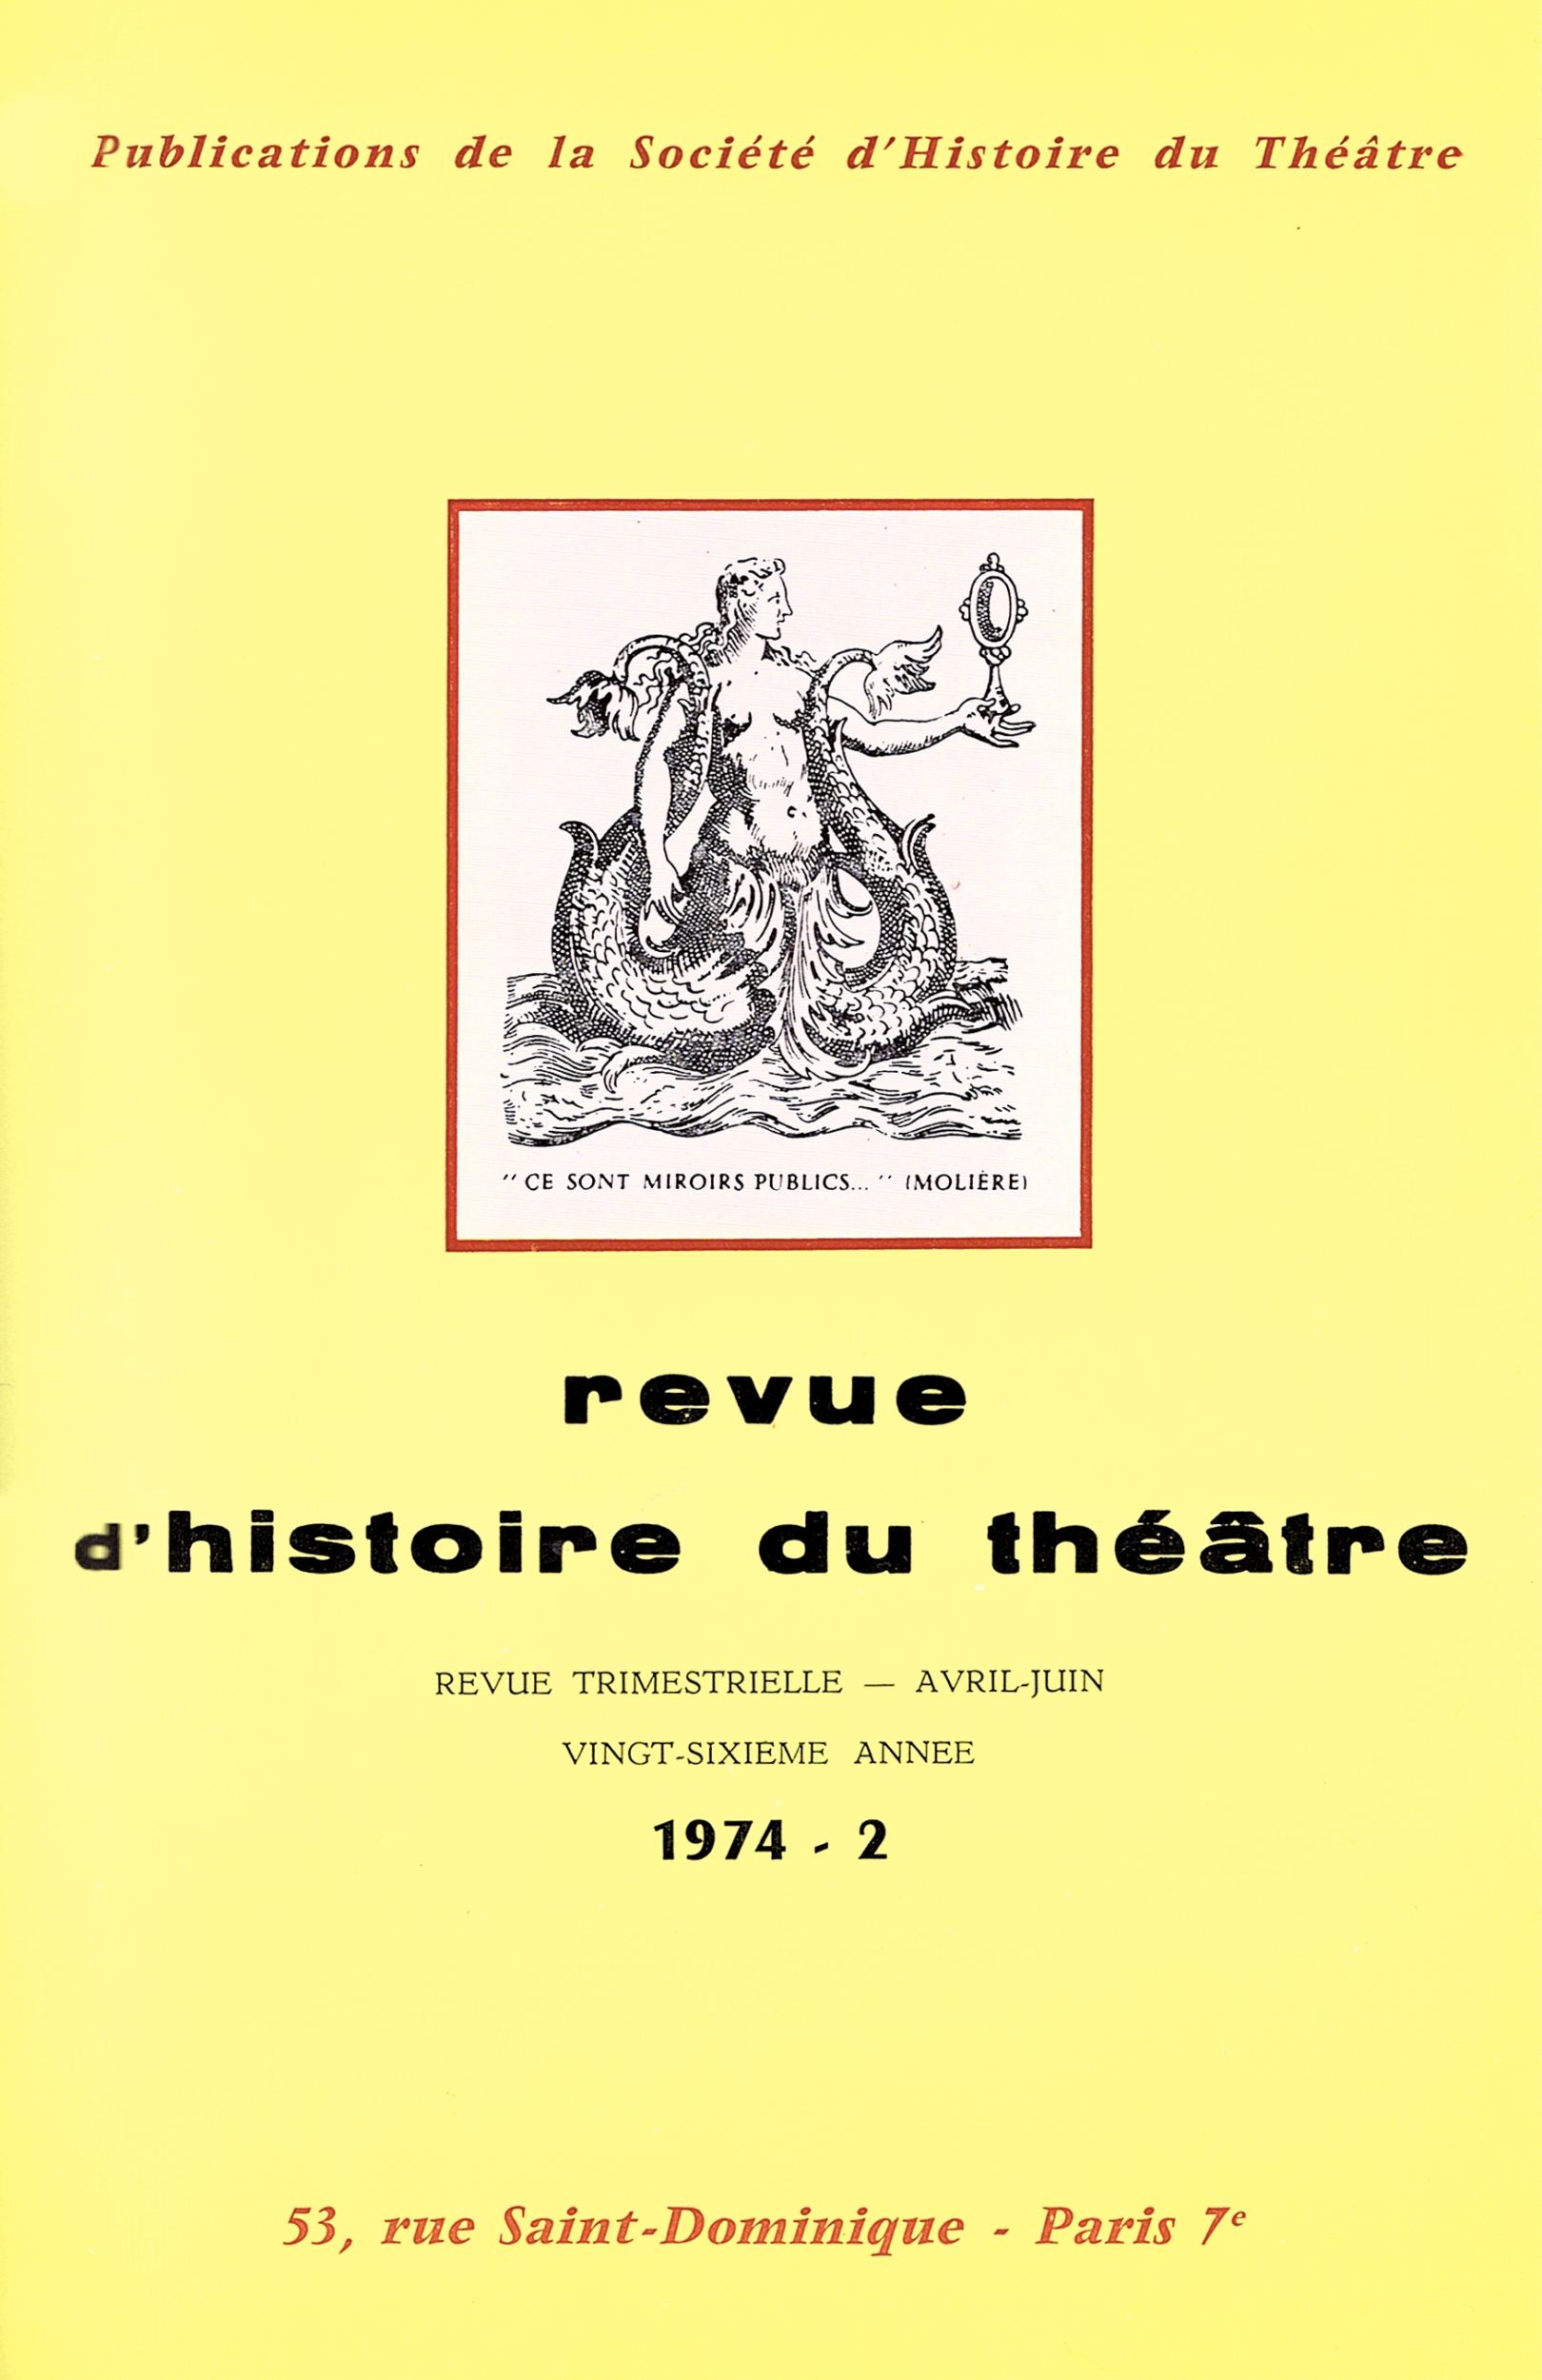 Actes des Journées internationales Molière – (UNESCO 1973) – Paris, 18-21 juin 1973 – Maison de l’Unesco – II